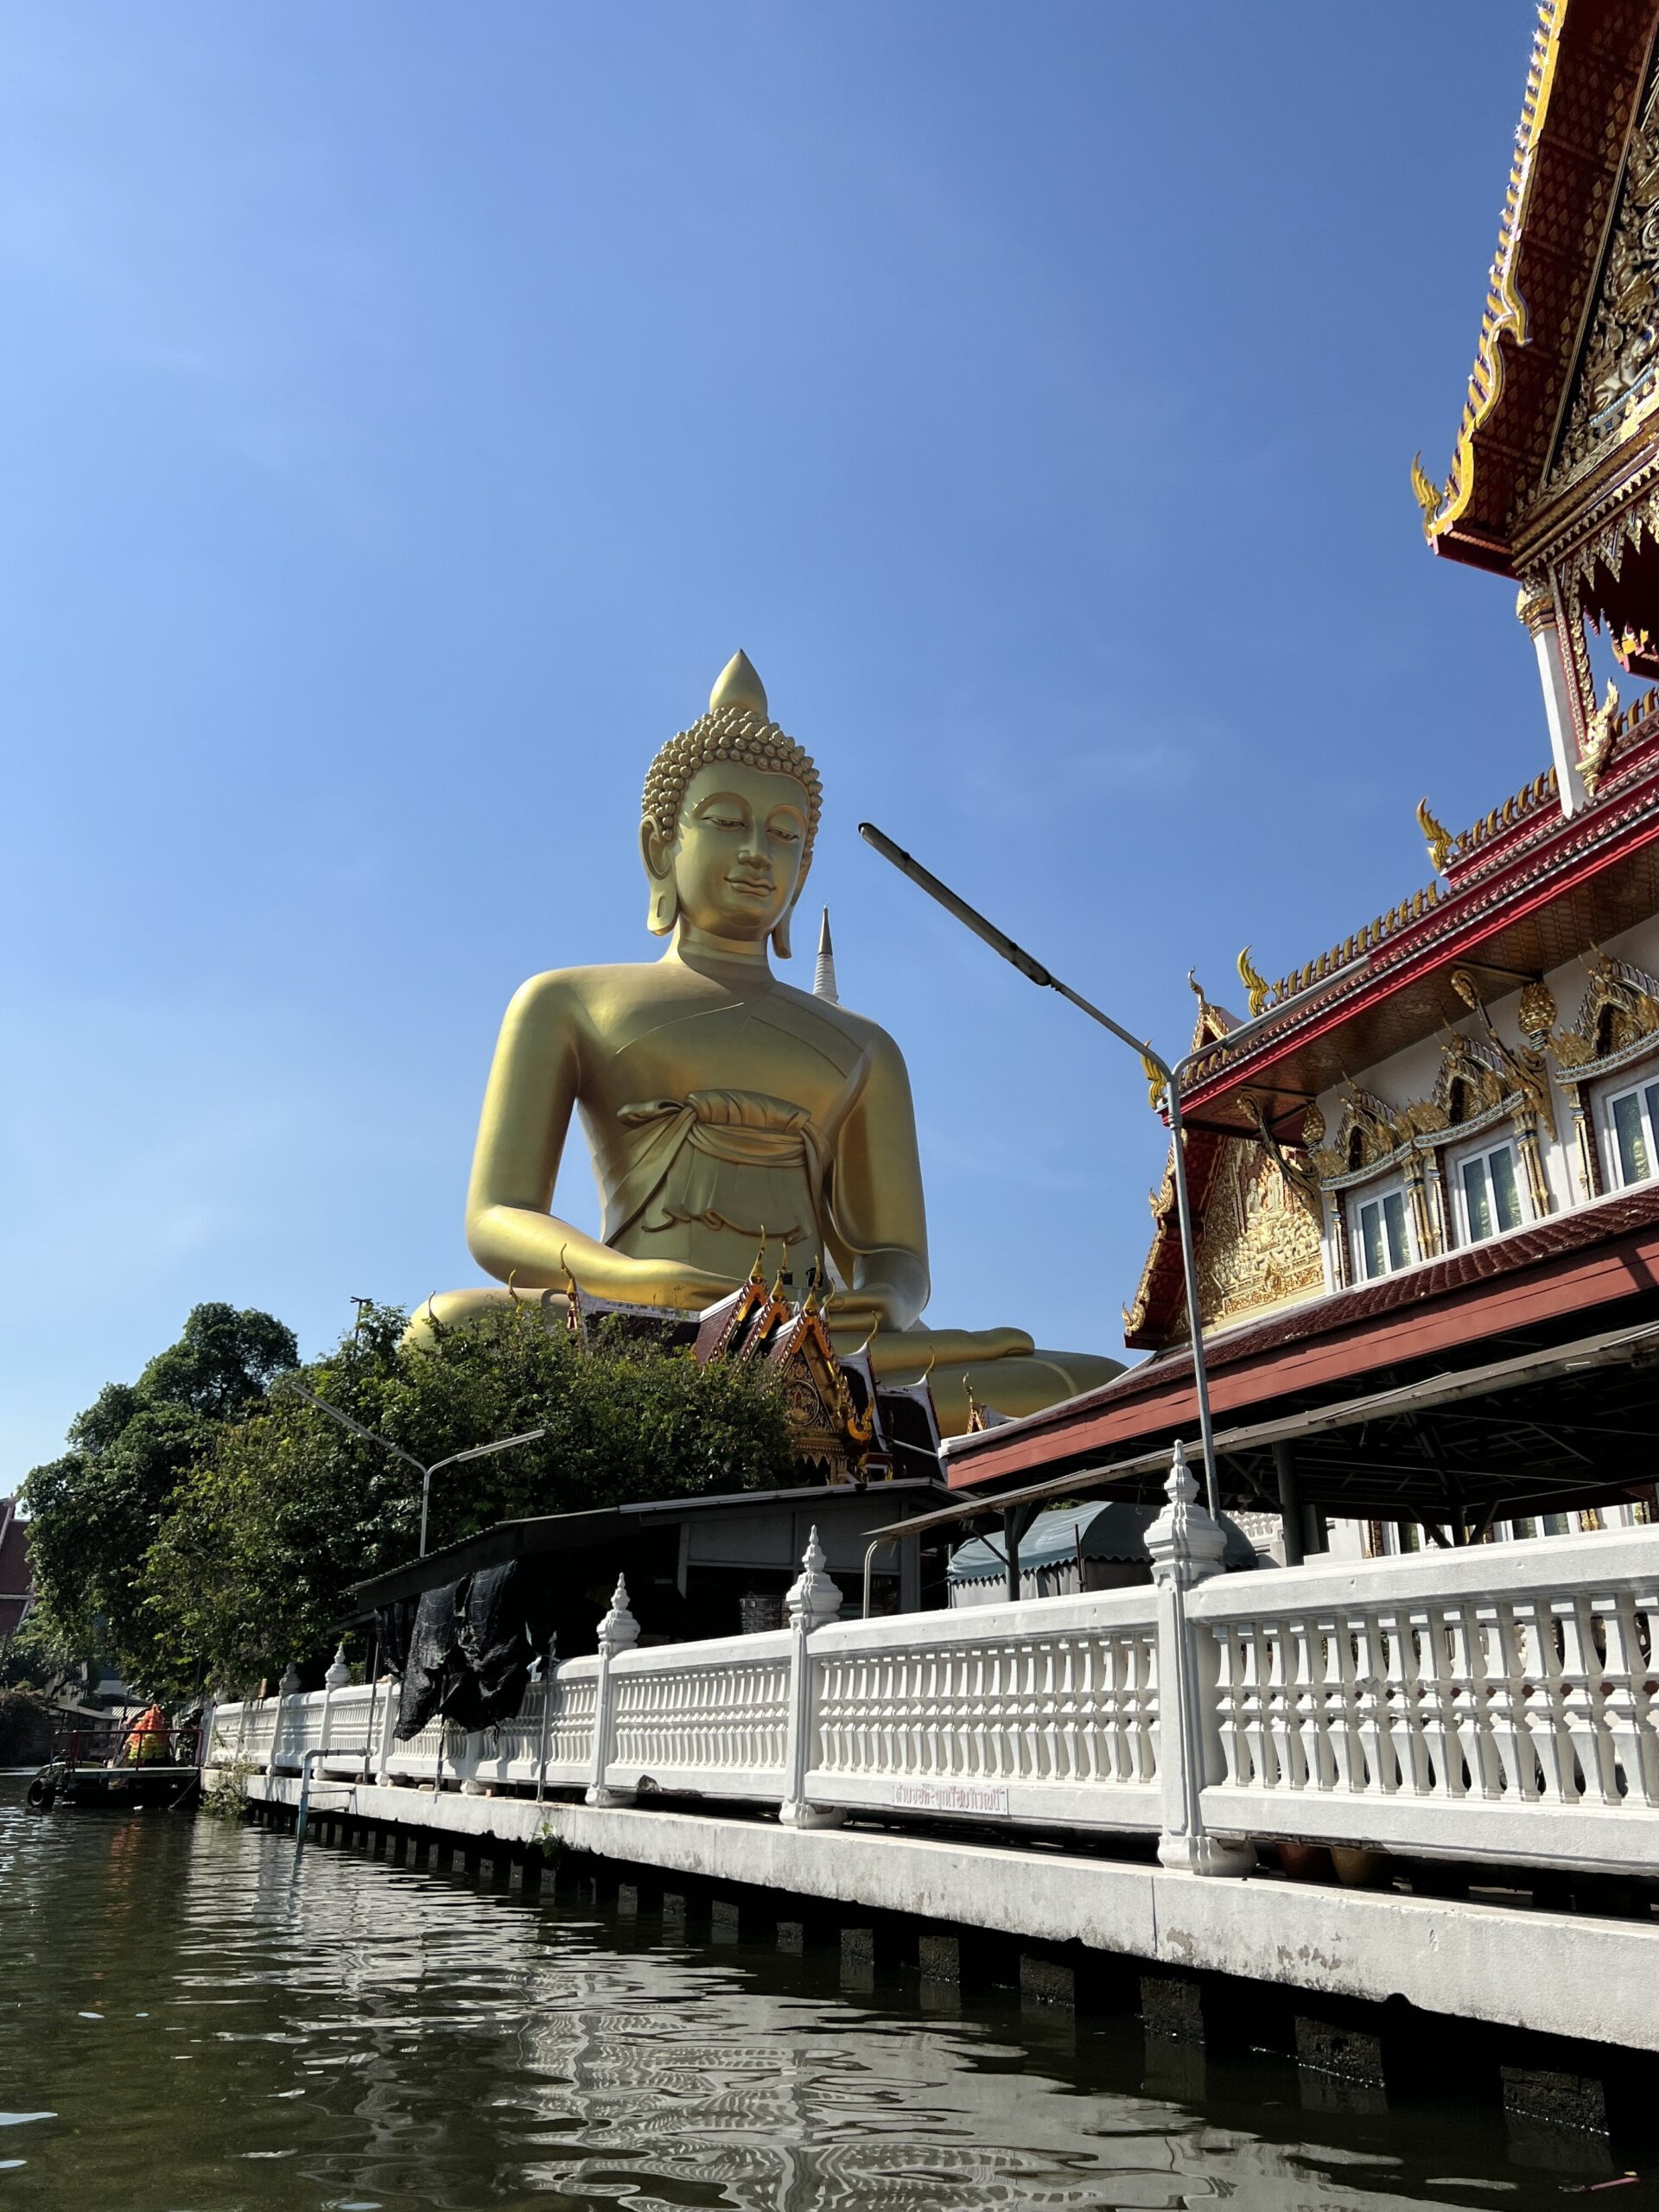 Three Days in Bangkok - Big Buddha